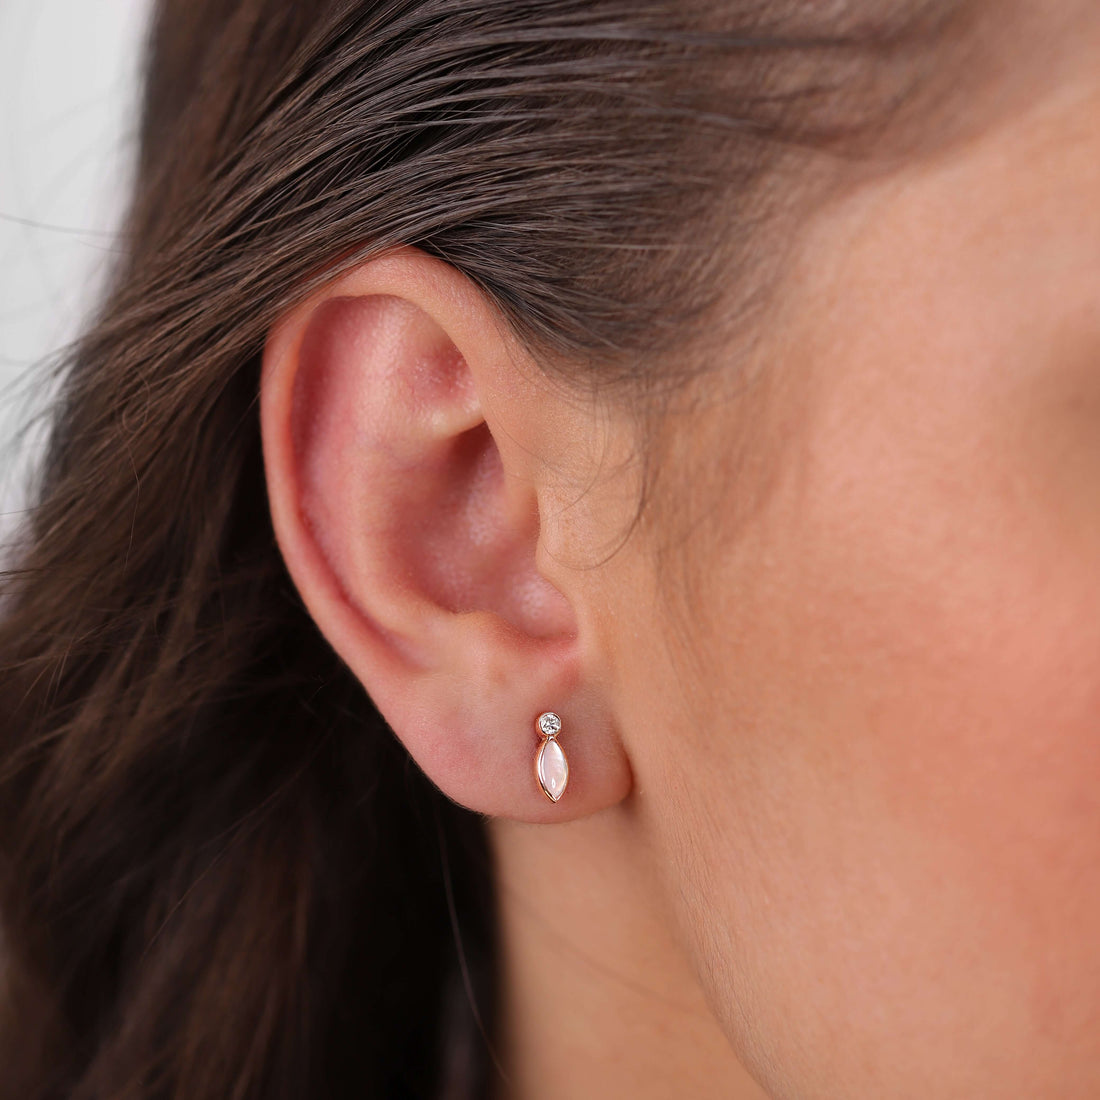 Gilda Jewelry Breeze Studs | Diamond Earrings |14K Gold - 14K Rose / Pair: 0.07 Cts. - earrings Zengoda Shop online